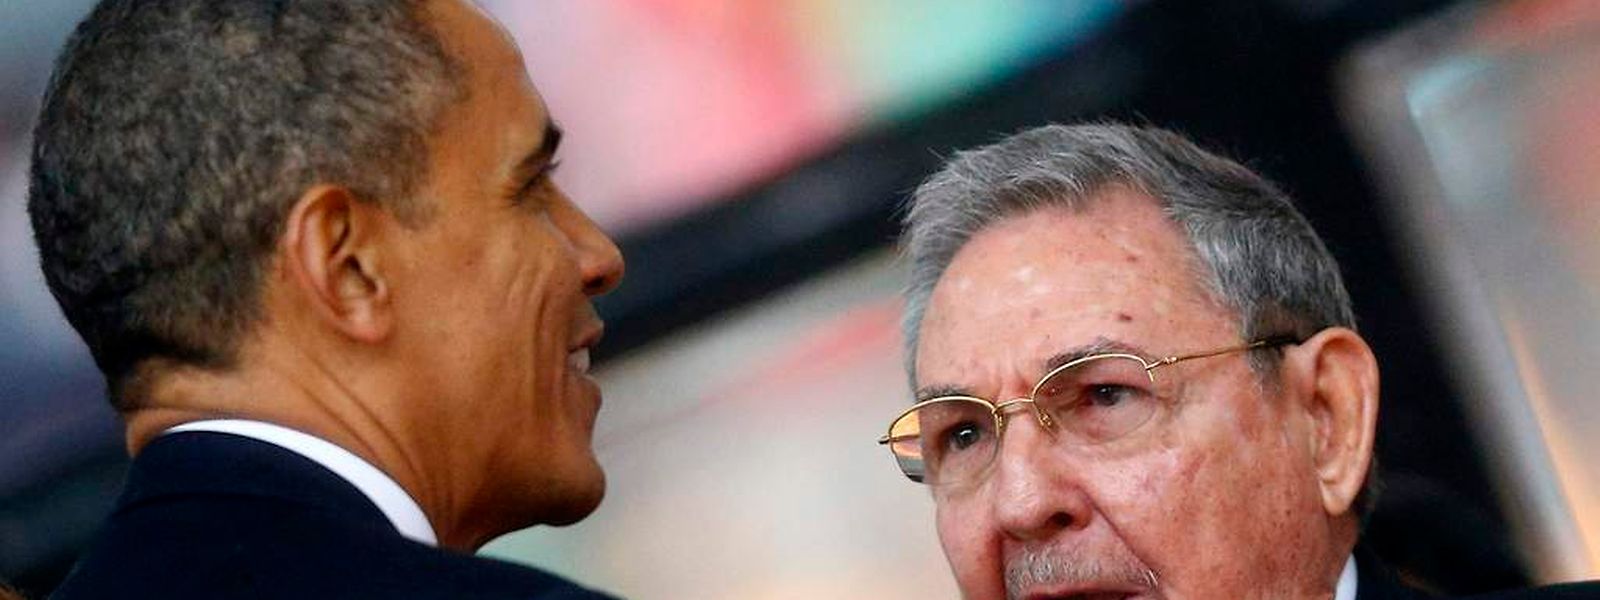 US-Präsident Barack Obama und der Kubanische Staatschef  Raul Castro bei der Gedenkfeier für den verstorbenen südafikanischen Präsidenten Nelson Mandela im Jahr 2013.